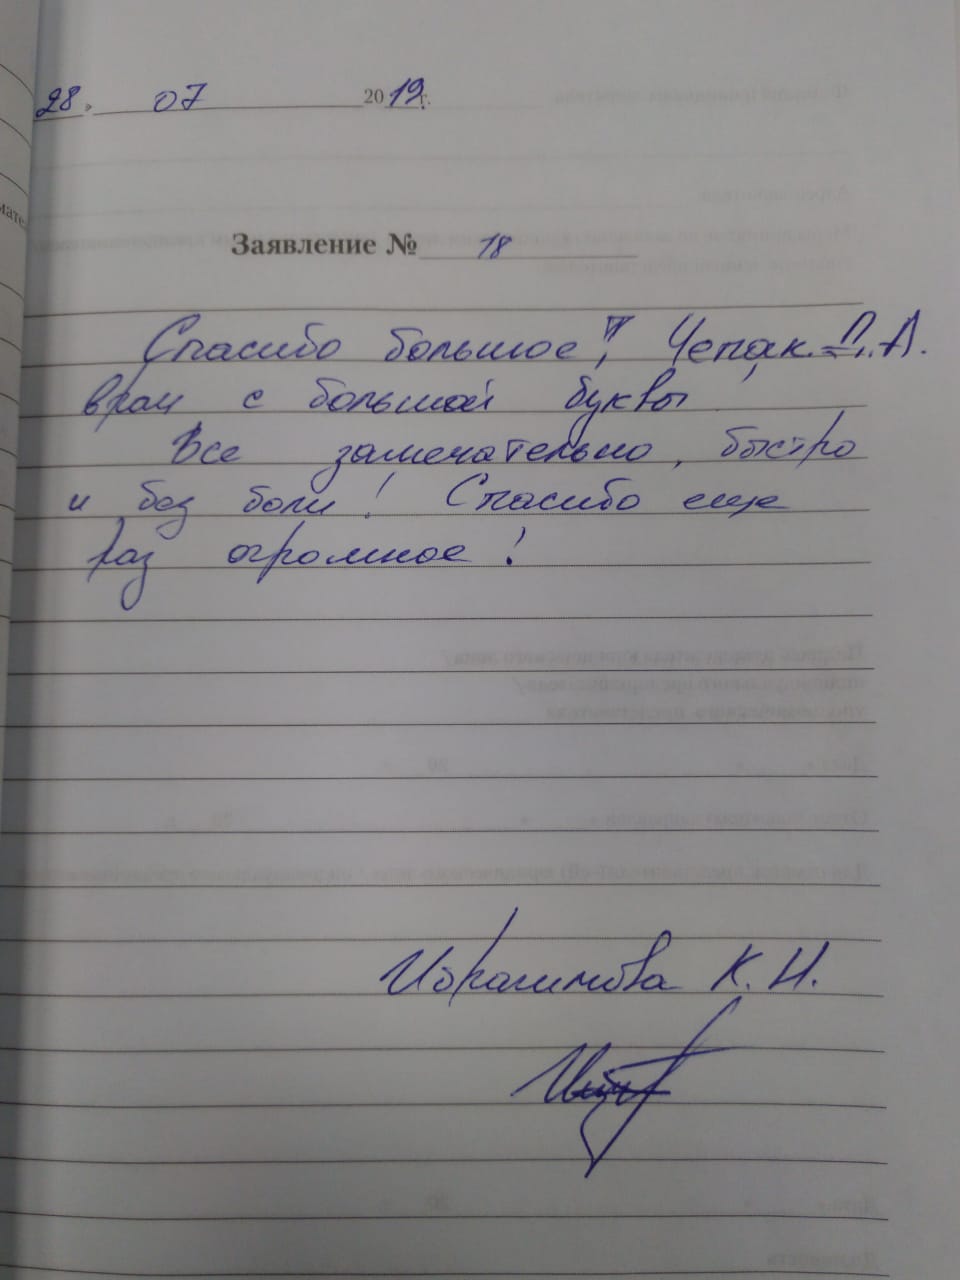 Отзыв Ибрагимова К.Н.